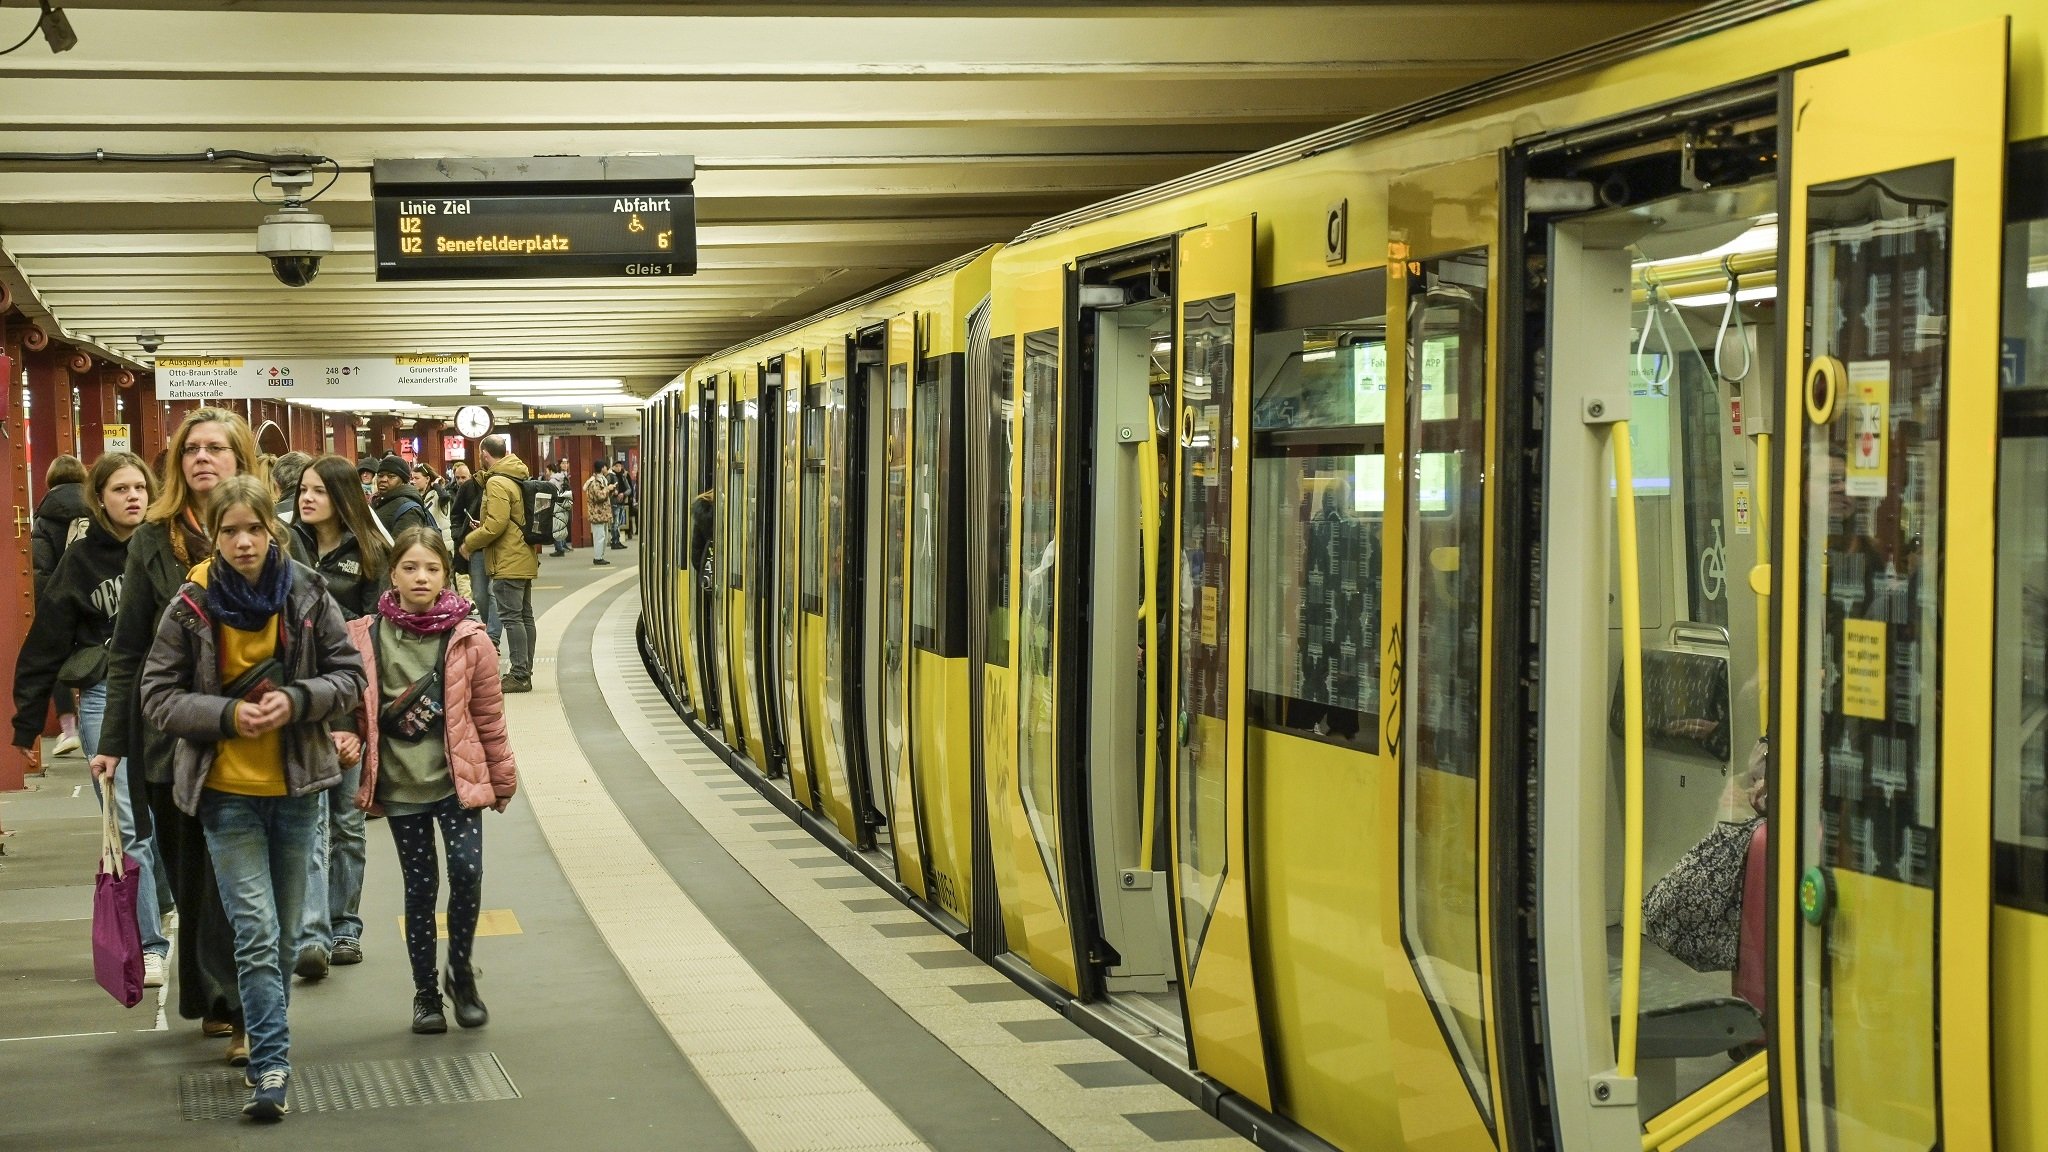 Am U-Bahnhof Alexanderplatz wurde ein Fahrgast rassistisch beleidigt